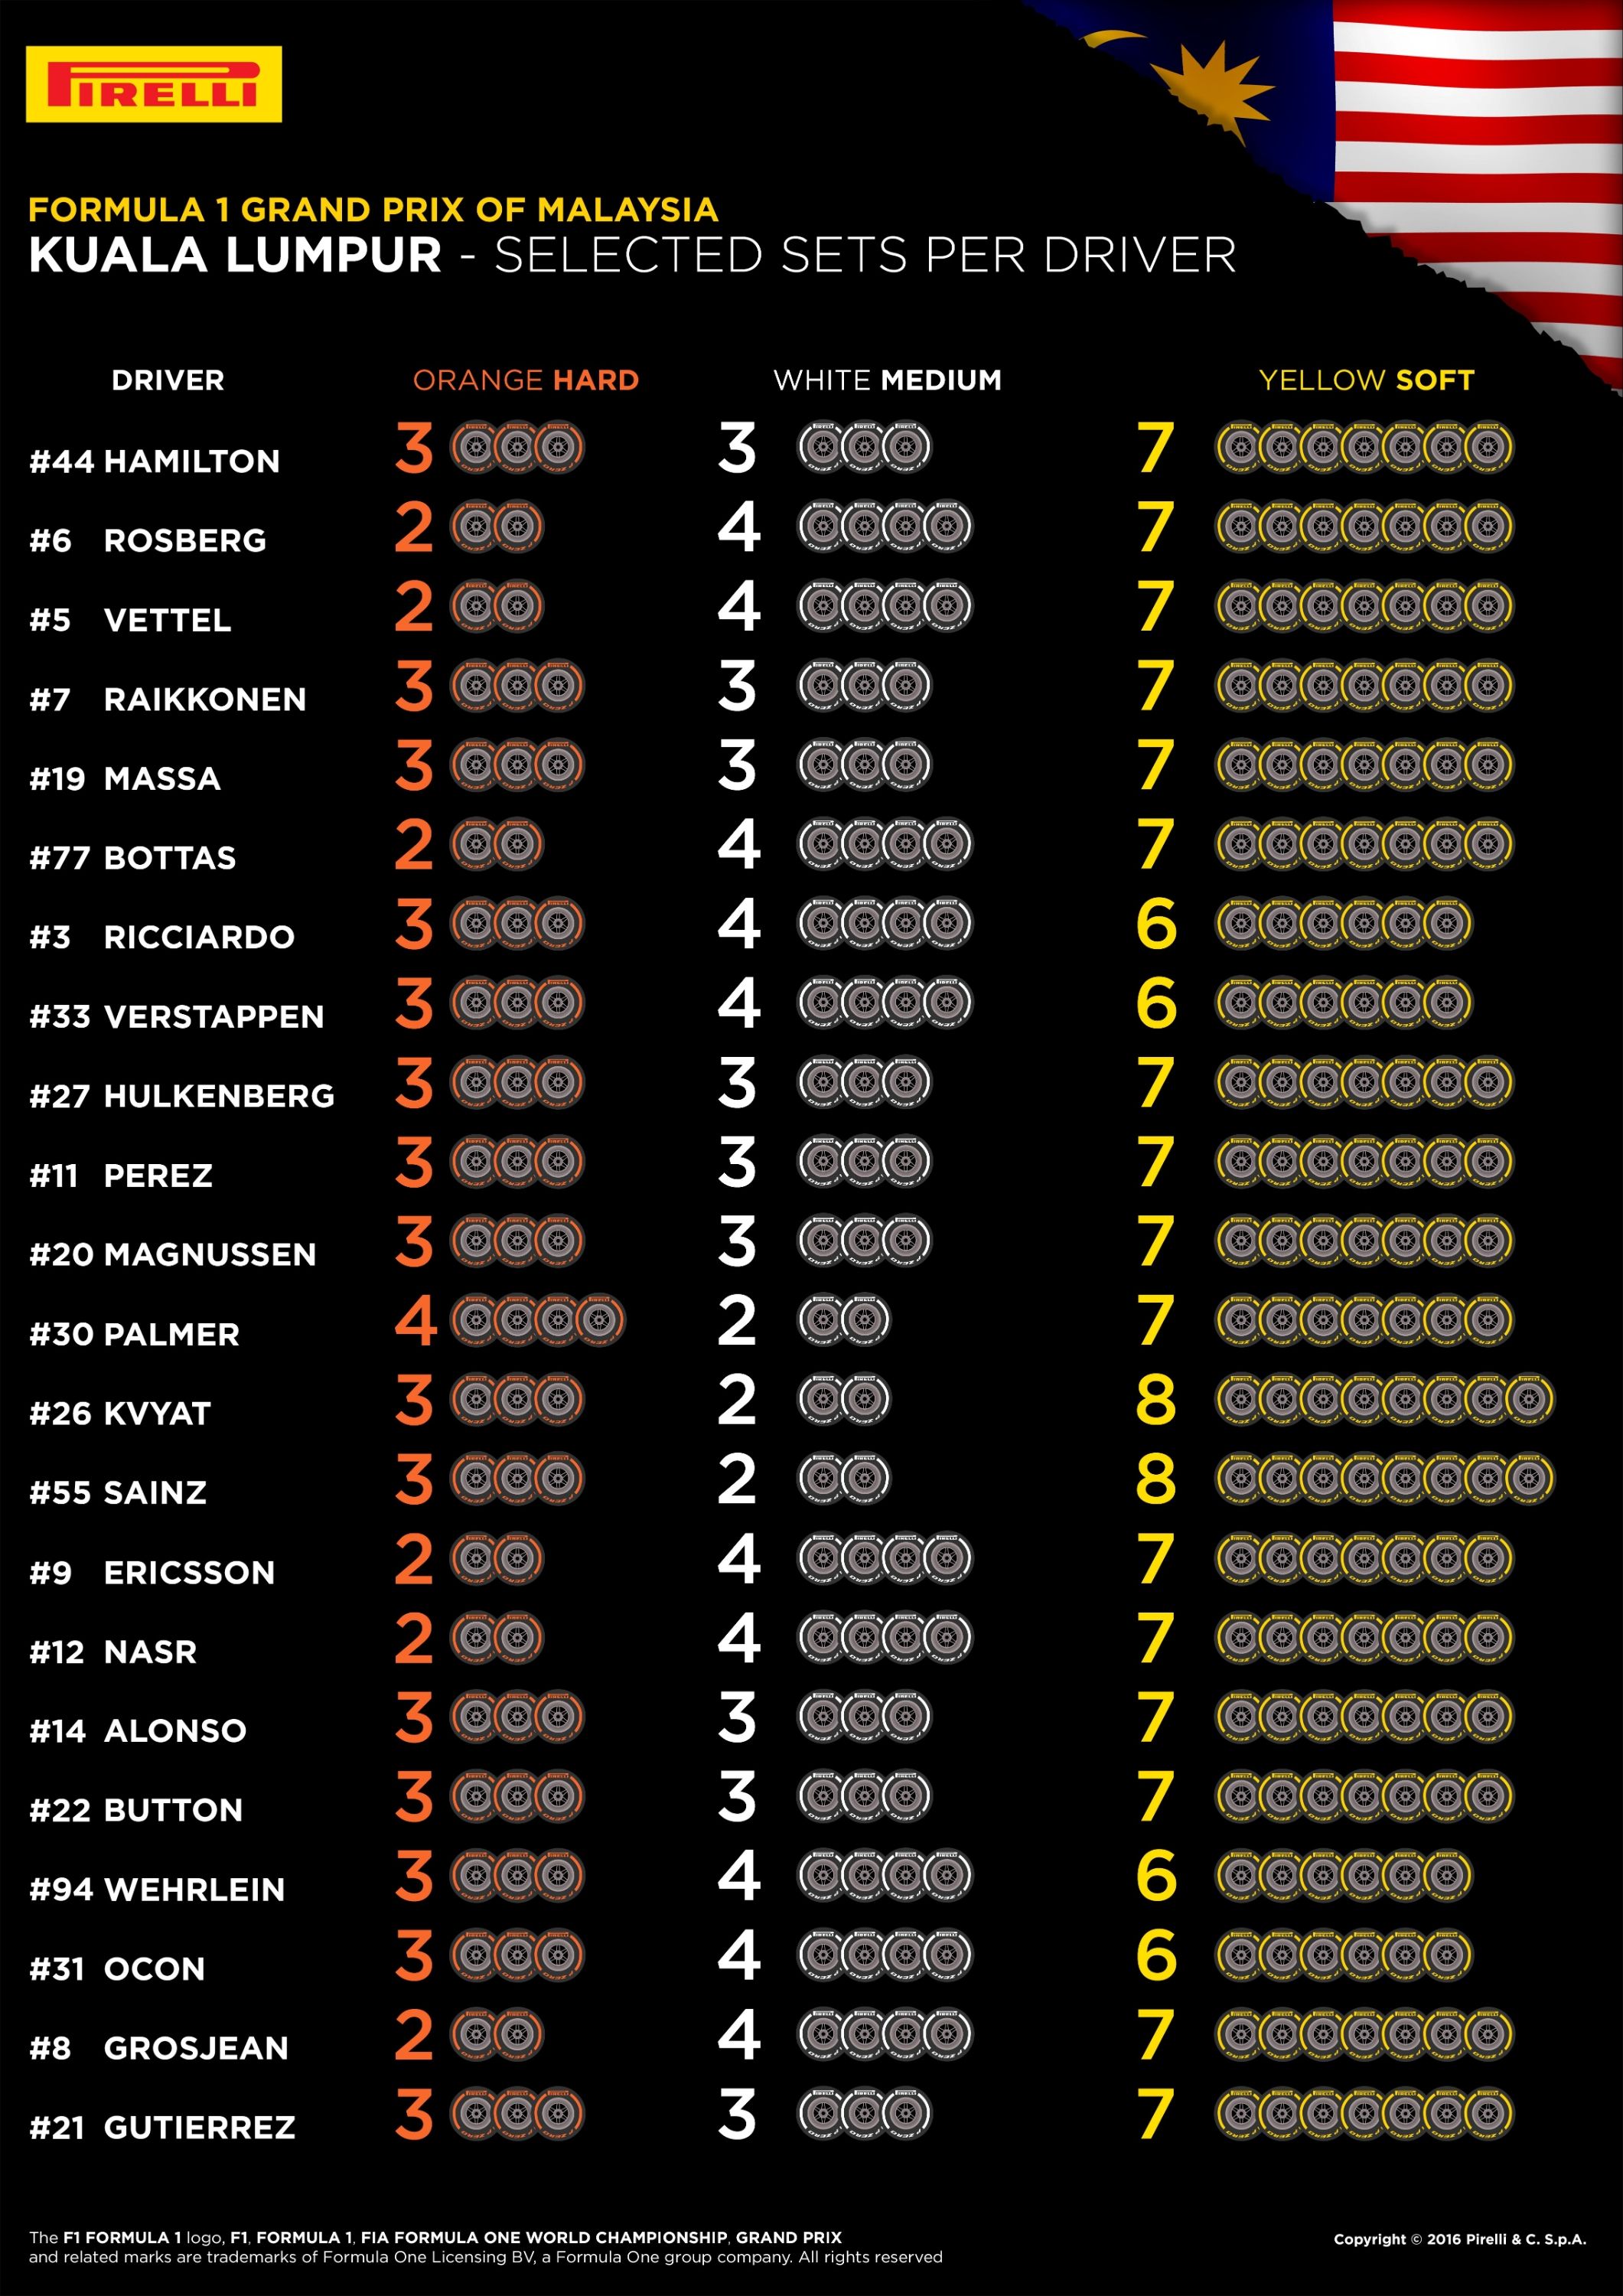 Le scelte dei piloti per il GP di Malesia 2016 (foto da: realsport101.com)